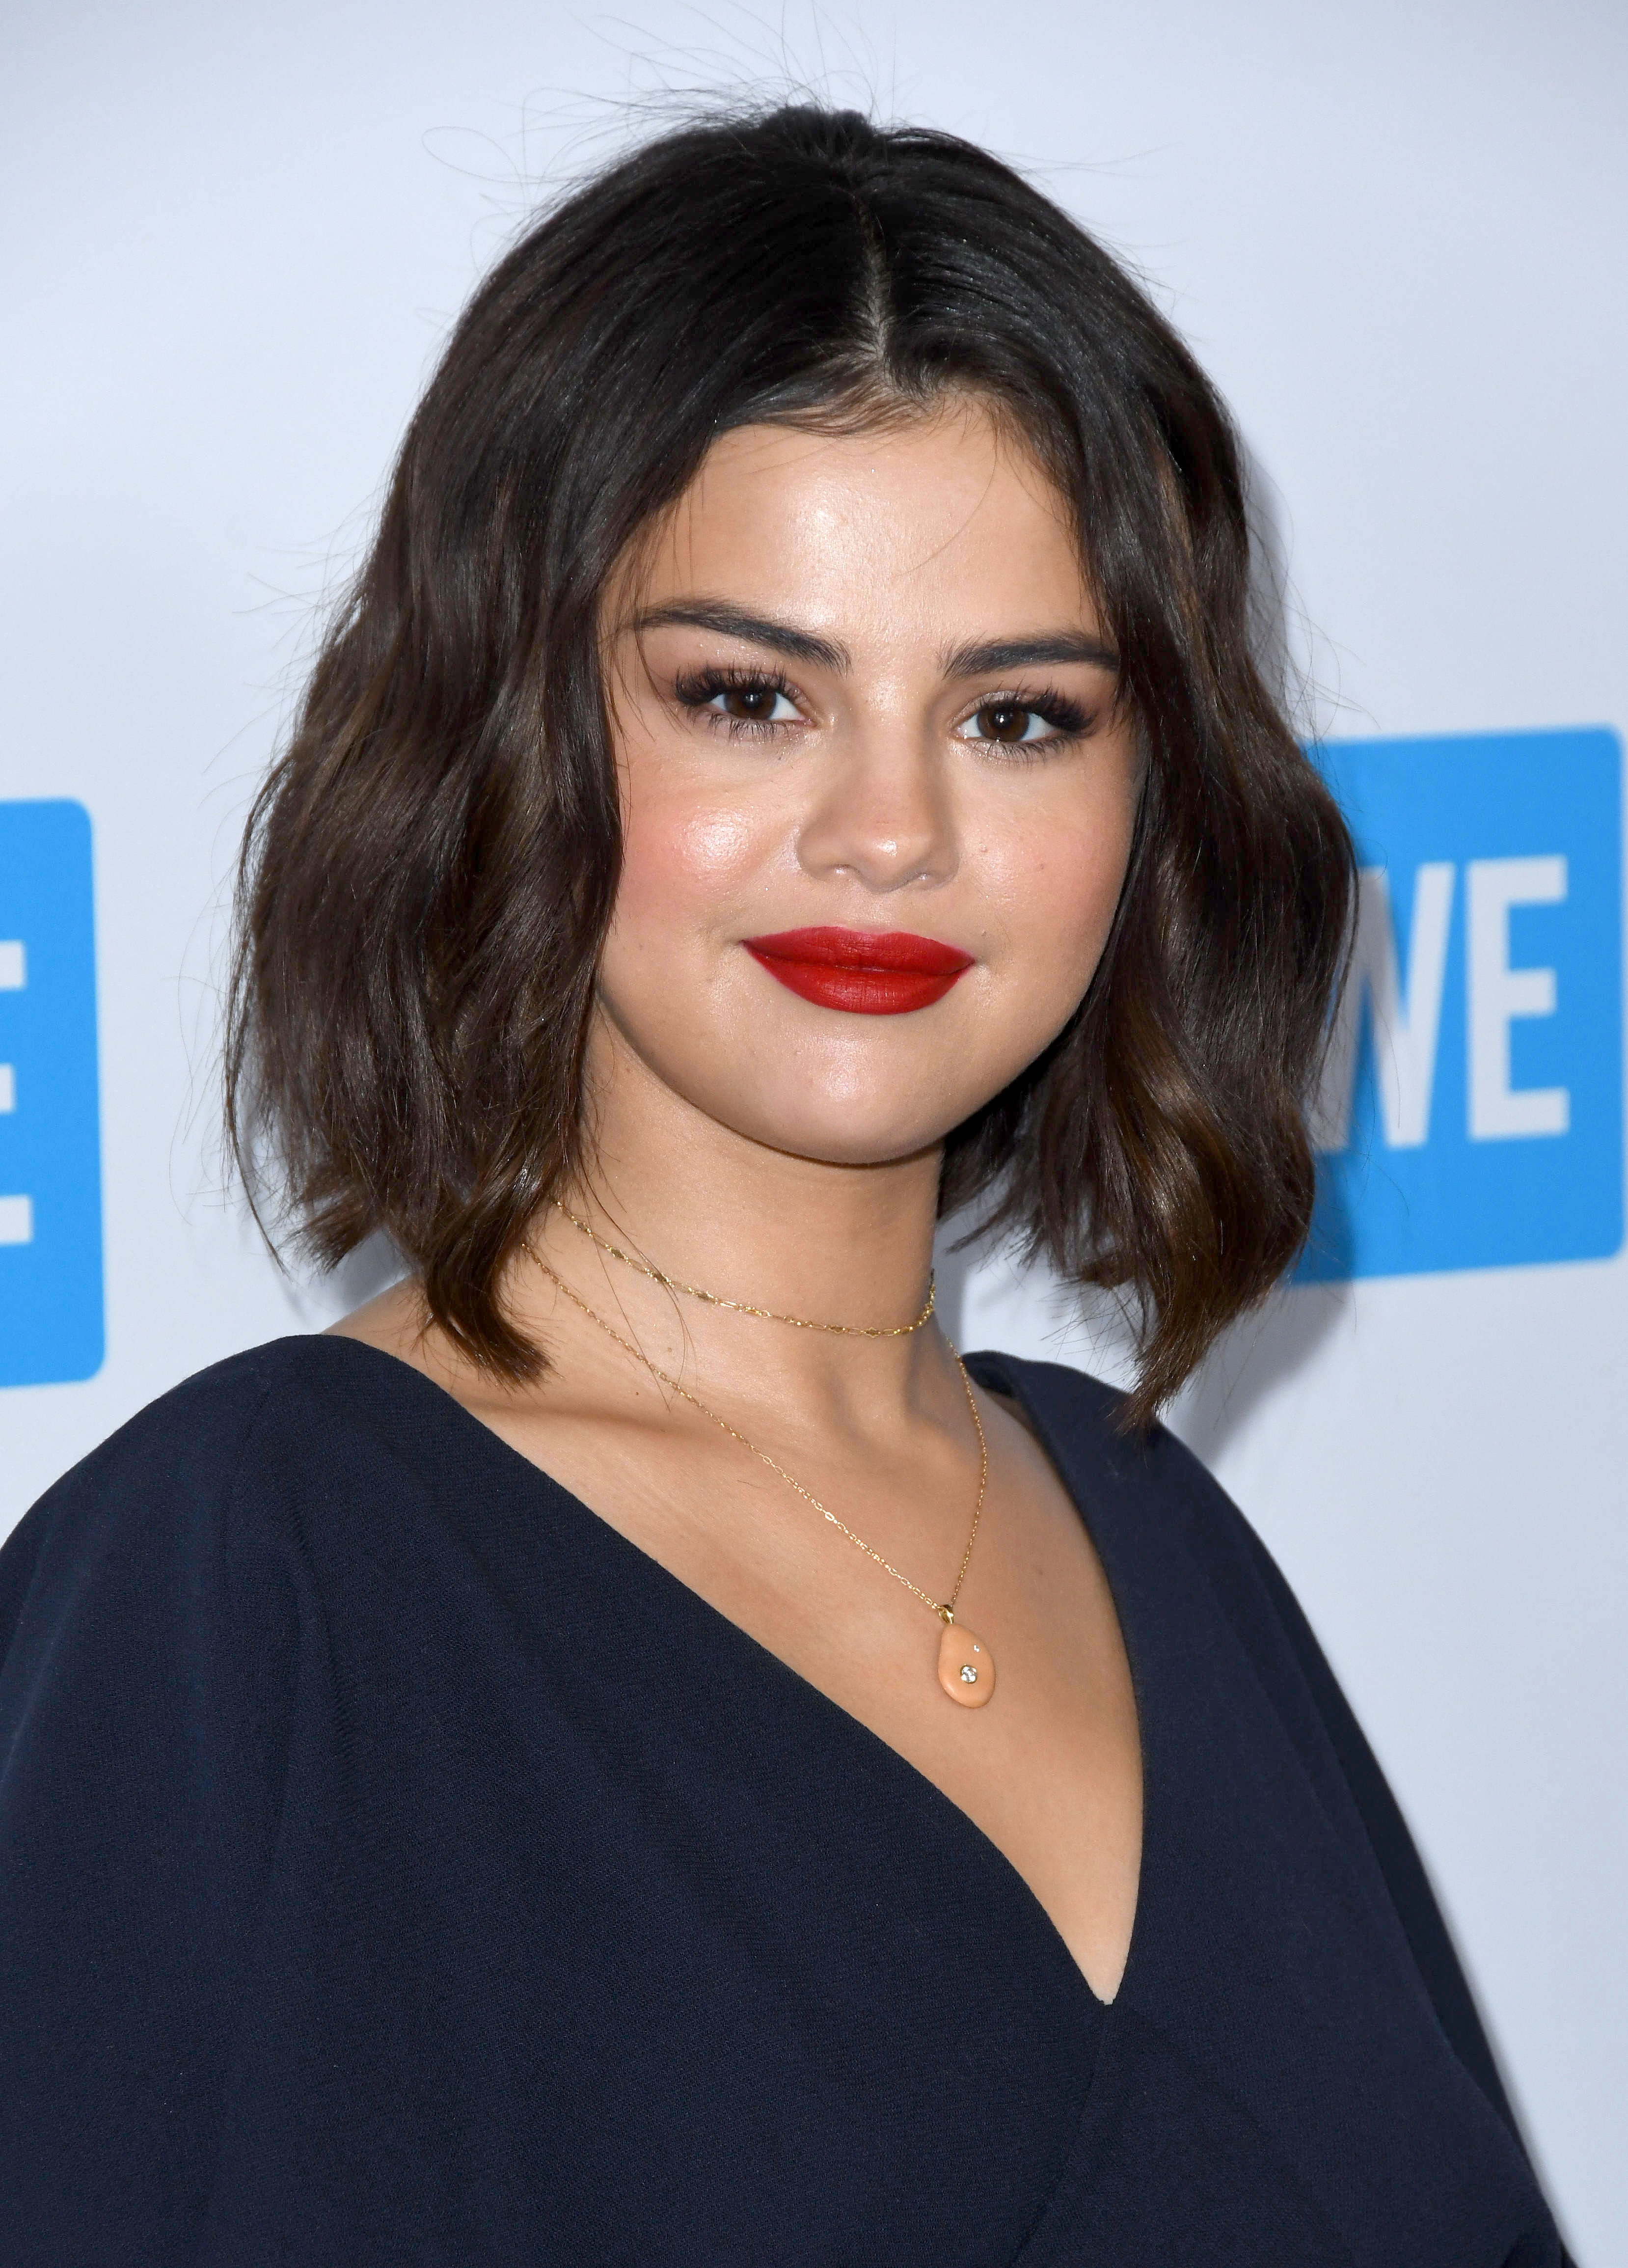 Η Selena Gomez άλλαξε και πάλι τα μαλλιά της ξανά (και θέλουμε να μας πεις πώς σου αρέσει περισσότερο!)